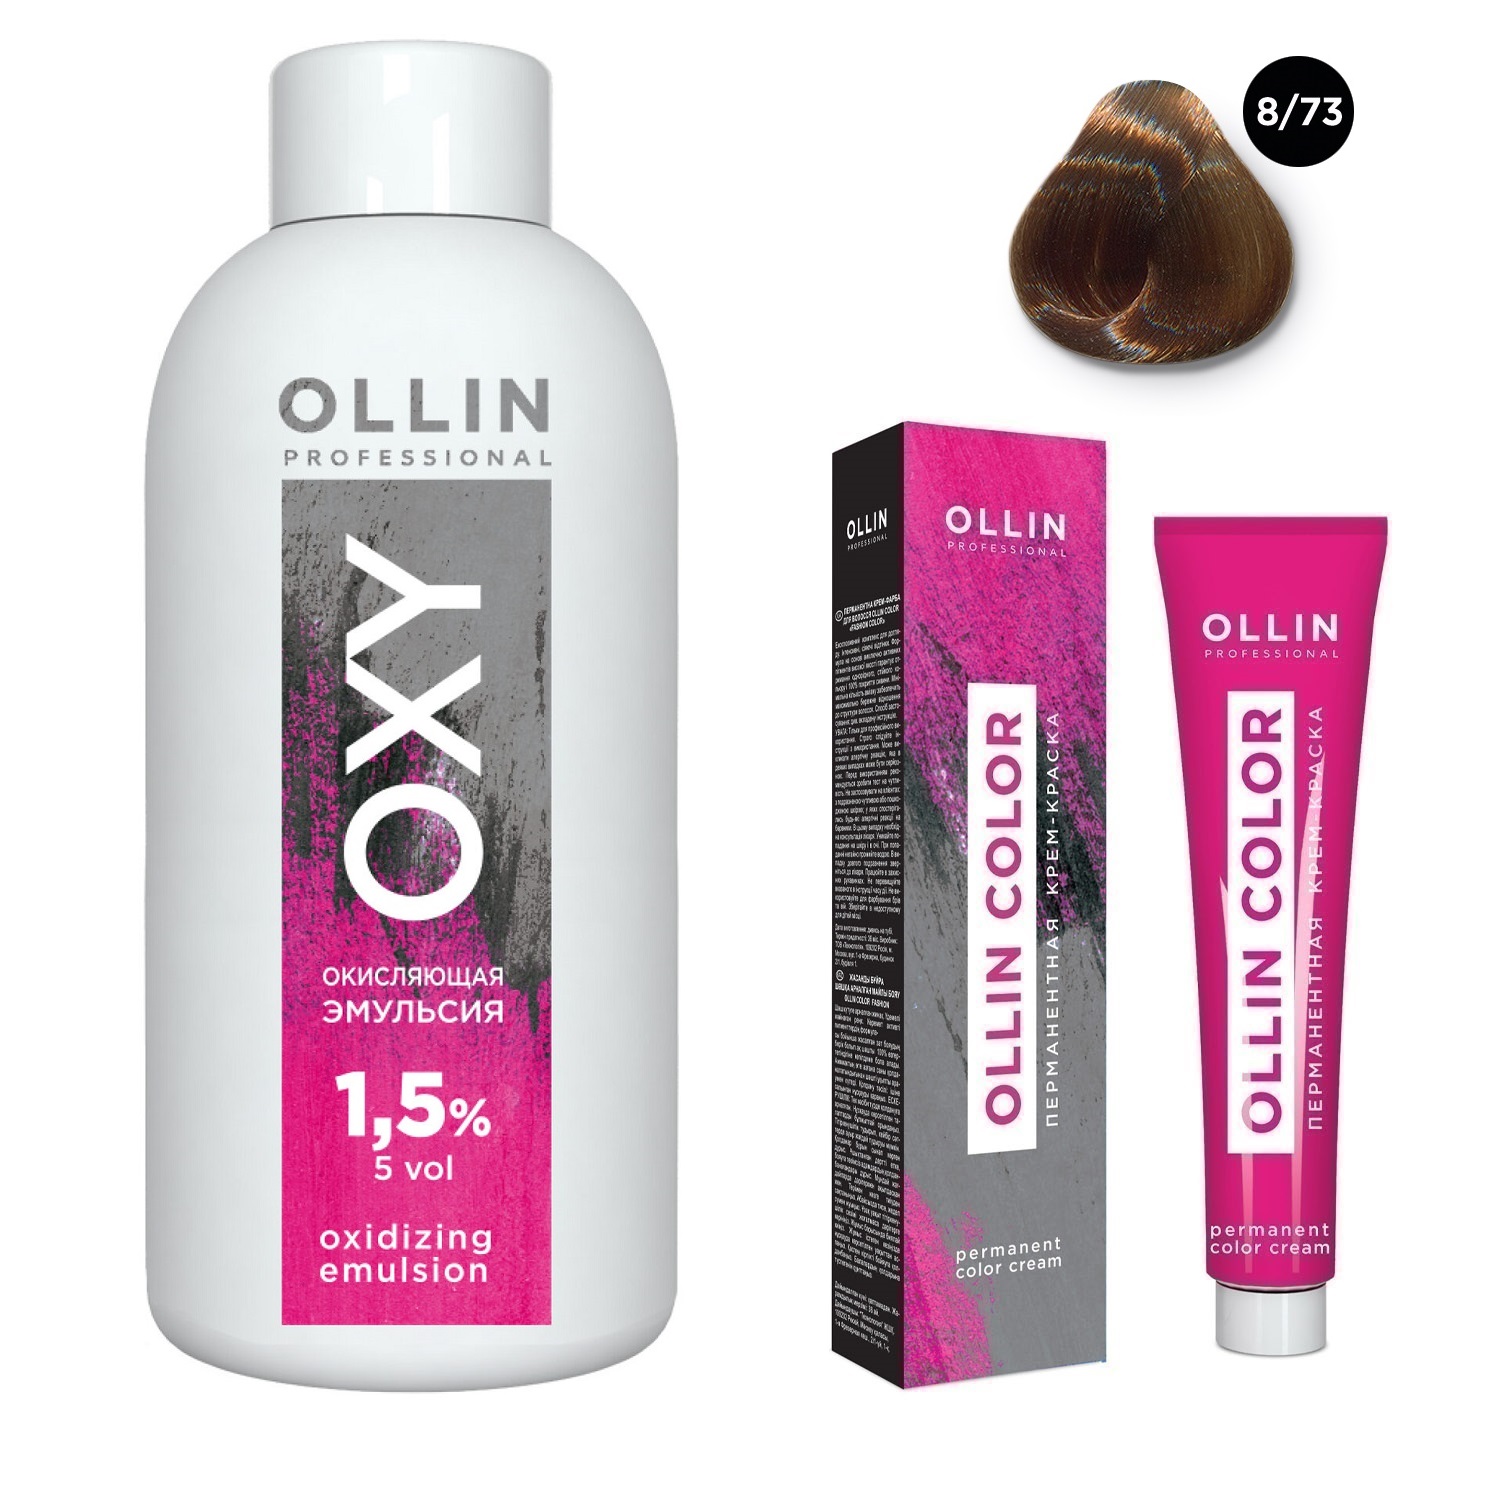 Купить Ollin Professional Набор Перманентная крем-краска для волос Ollin Color оттенок 8/73 светло-русый коричнево-золотистый 100 мл + Окисляющая эмульсия Oxy 1, 5% 150 мл (Ollin Professional, Ollin Color), Россия